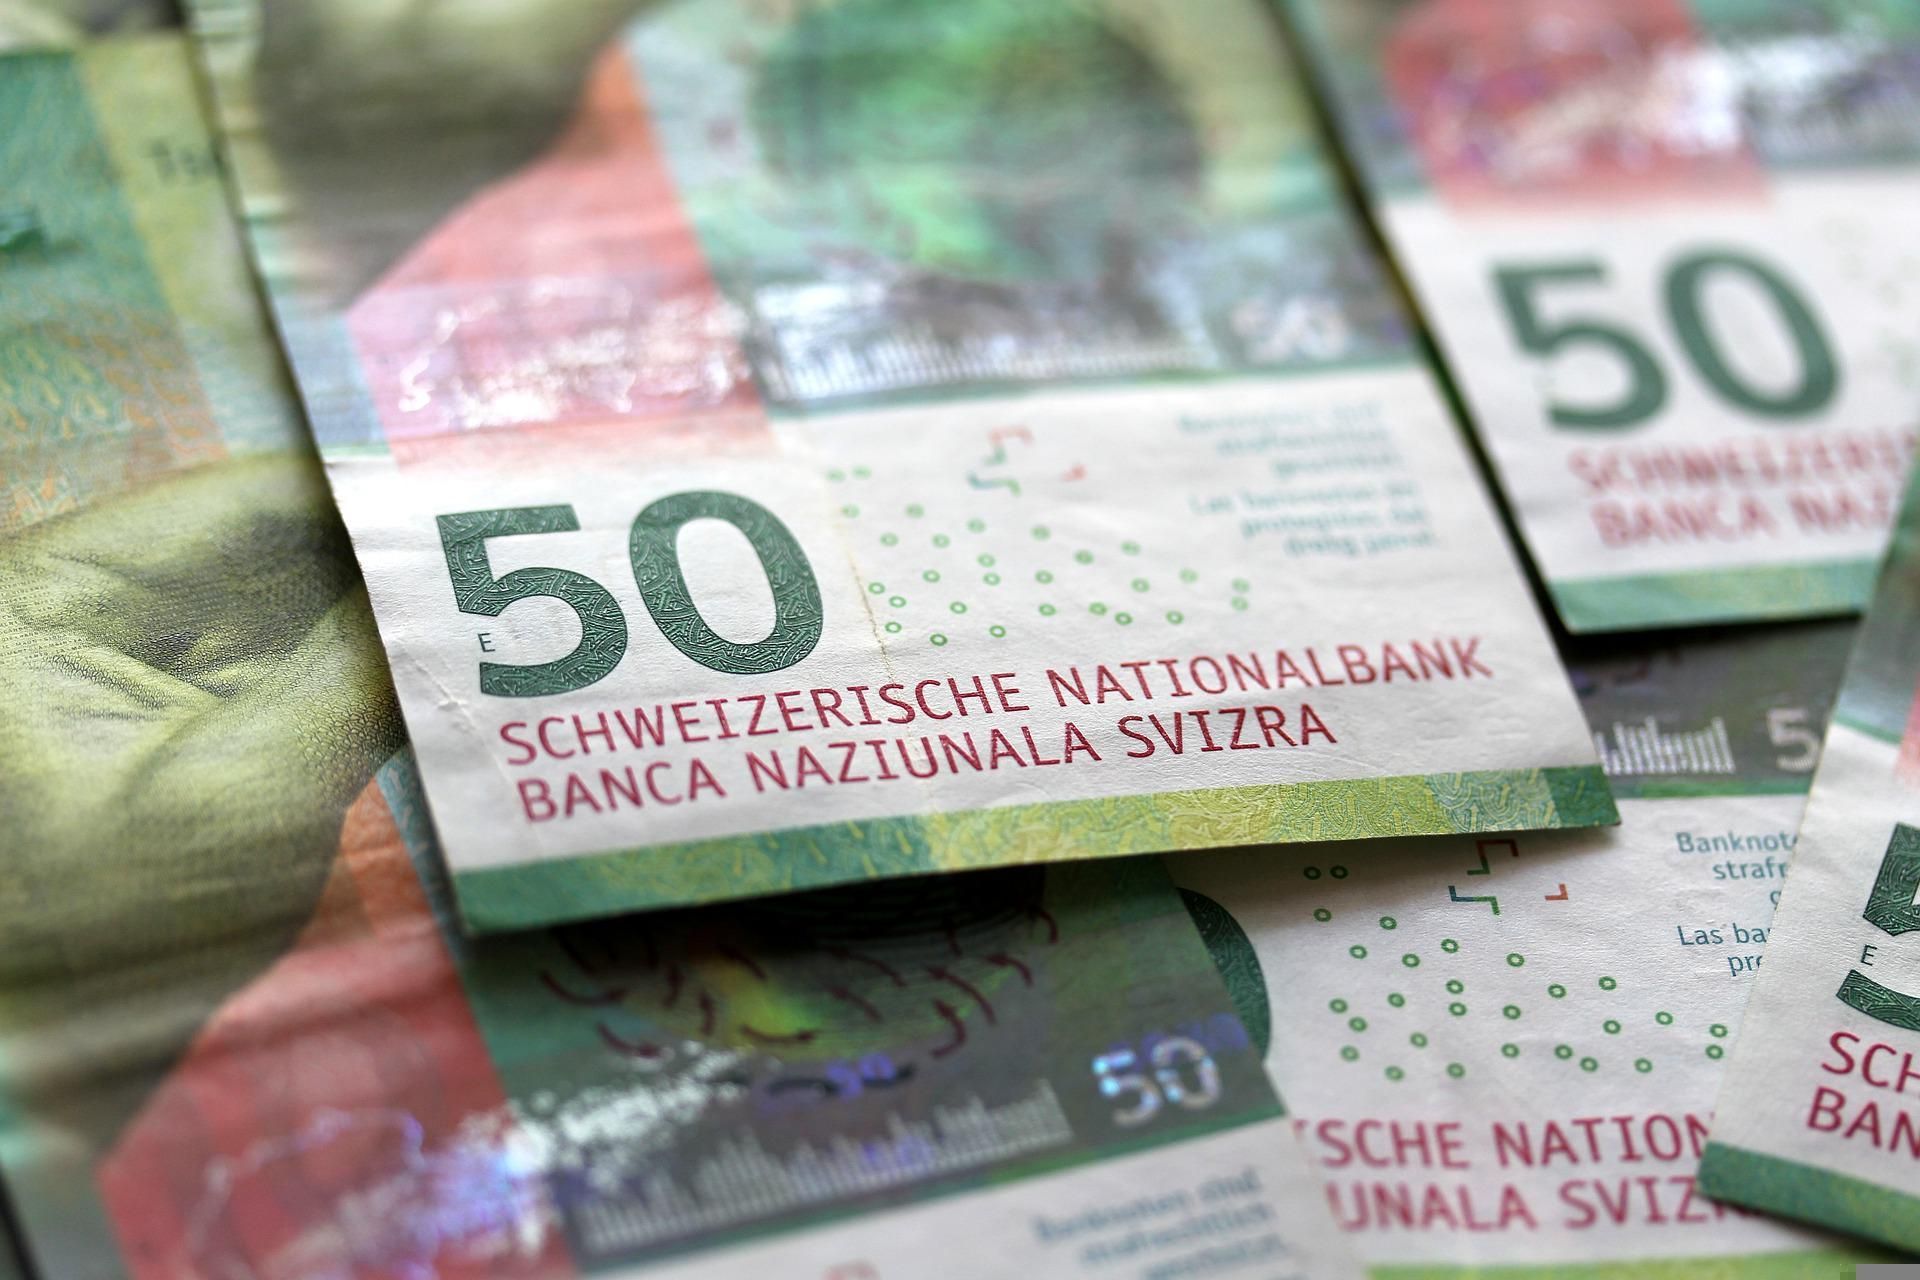 Le banconote svizzere da 50 franchi presentano un accattivante colore verde